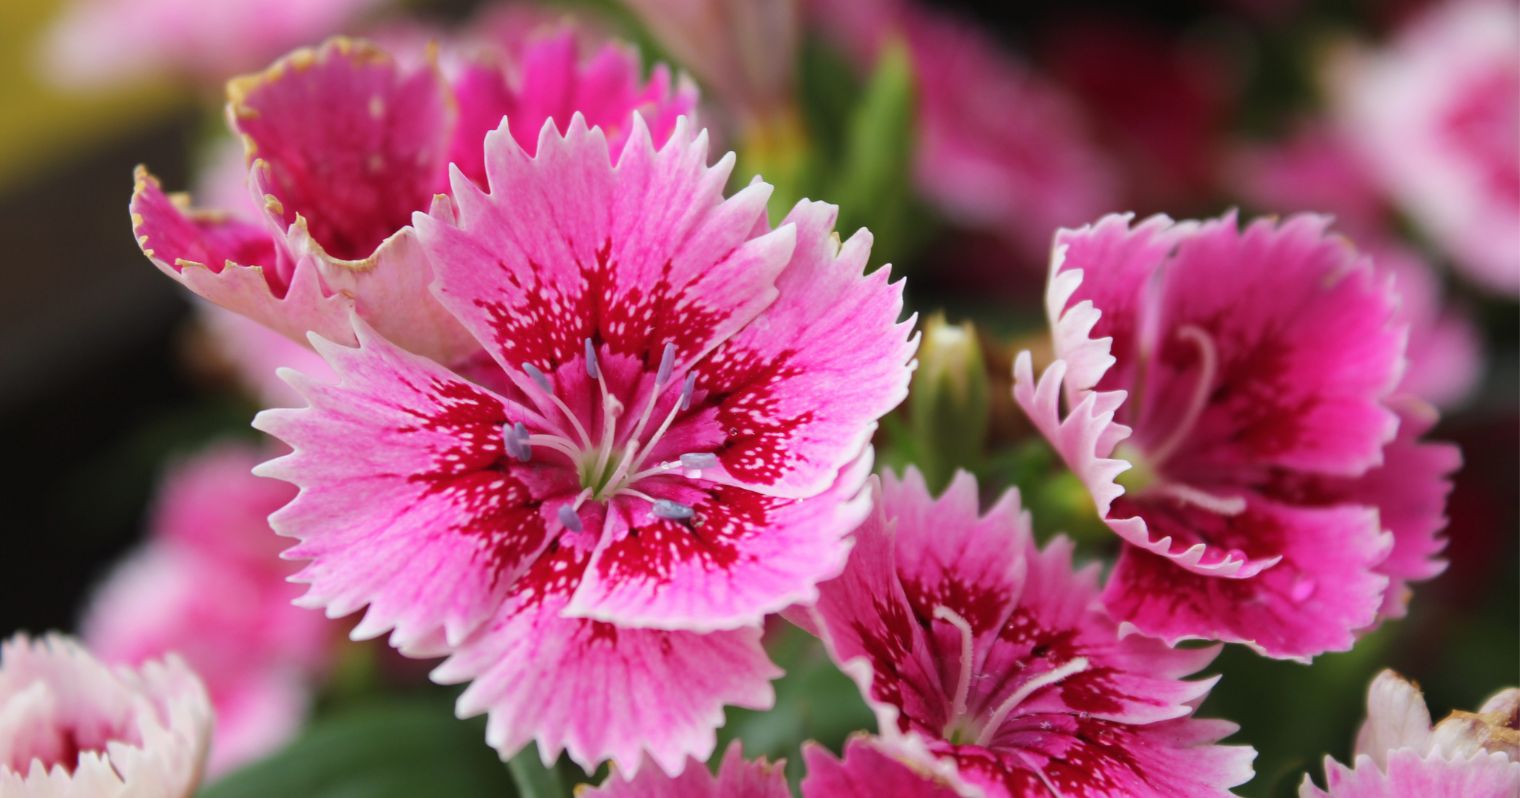 Rózsaszín, cakkos szirmú virág, a szirmok belső részén pirosas színeződés van.